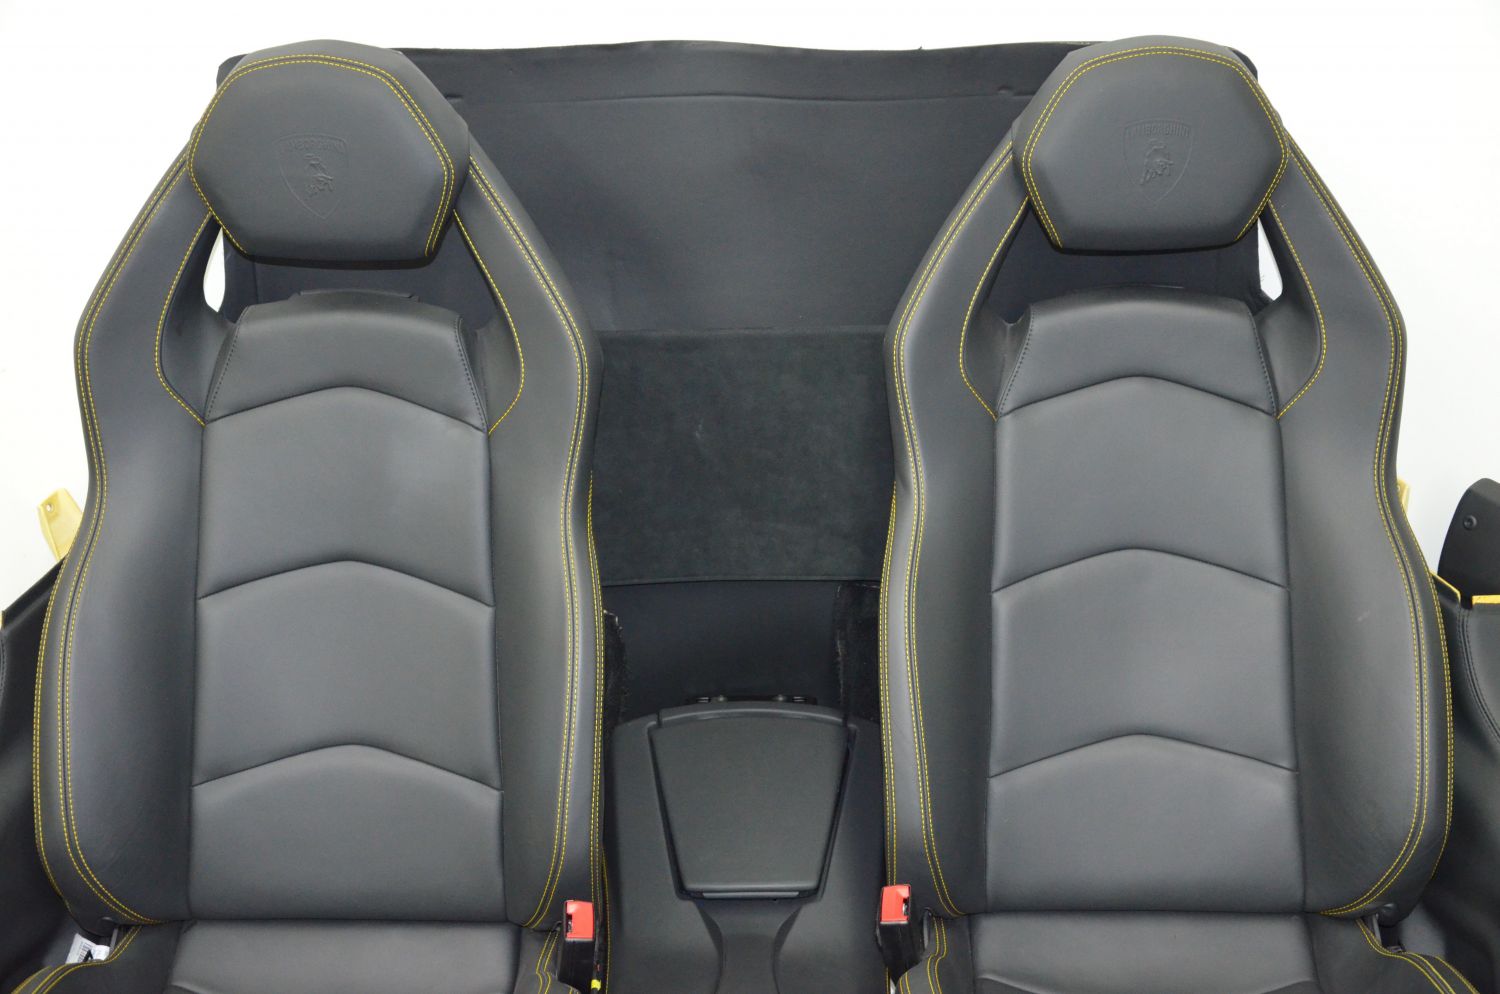 Lamborghini Aventador Coupe Interior Design, Seats, Dash ...